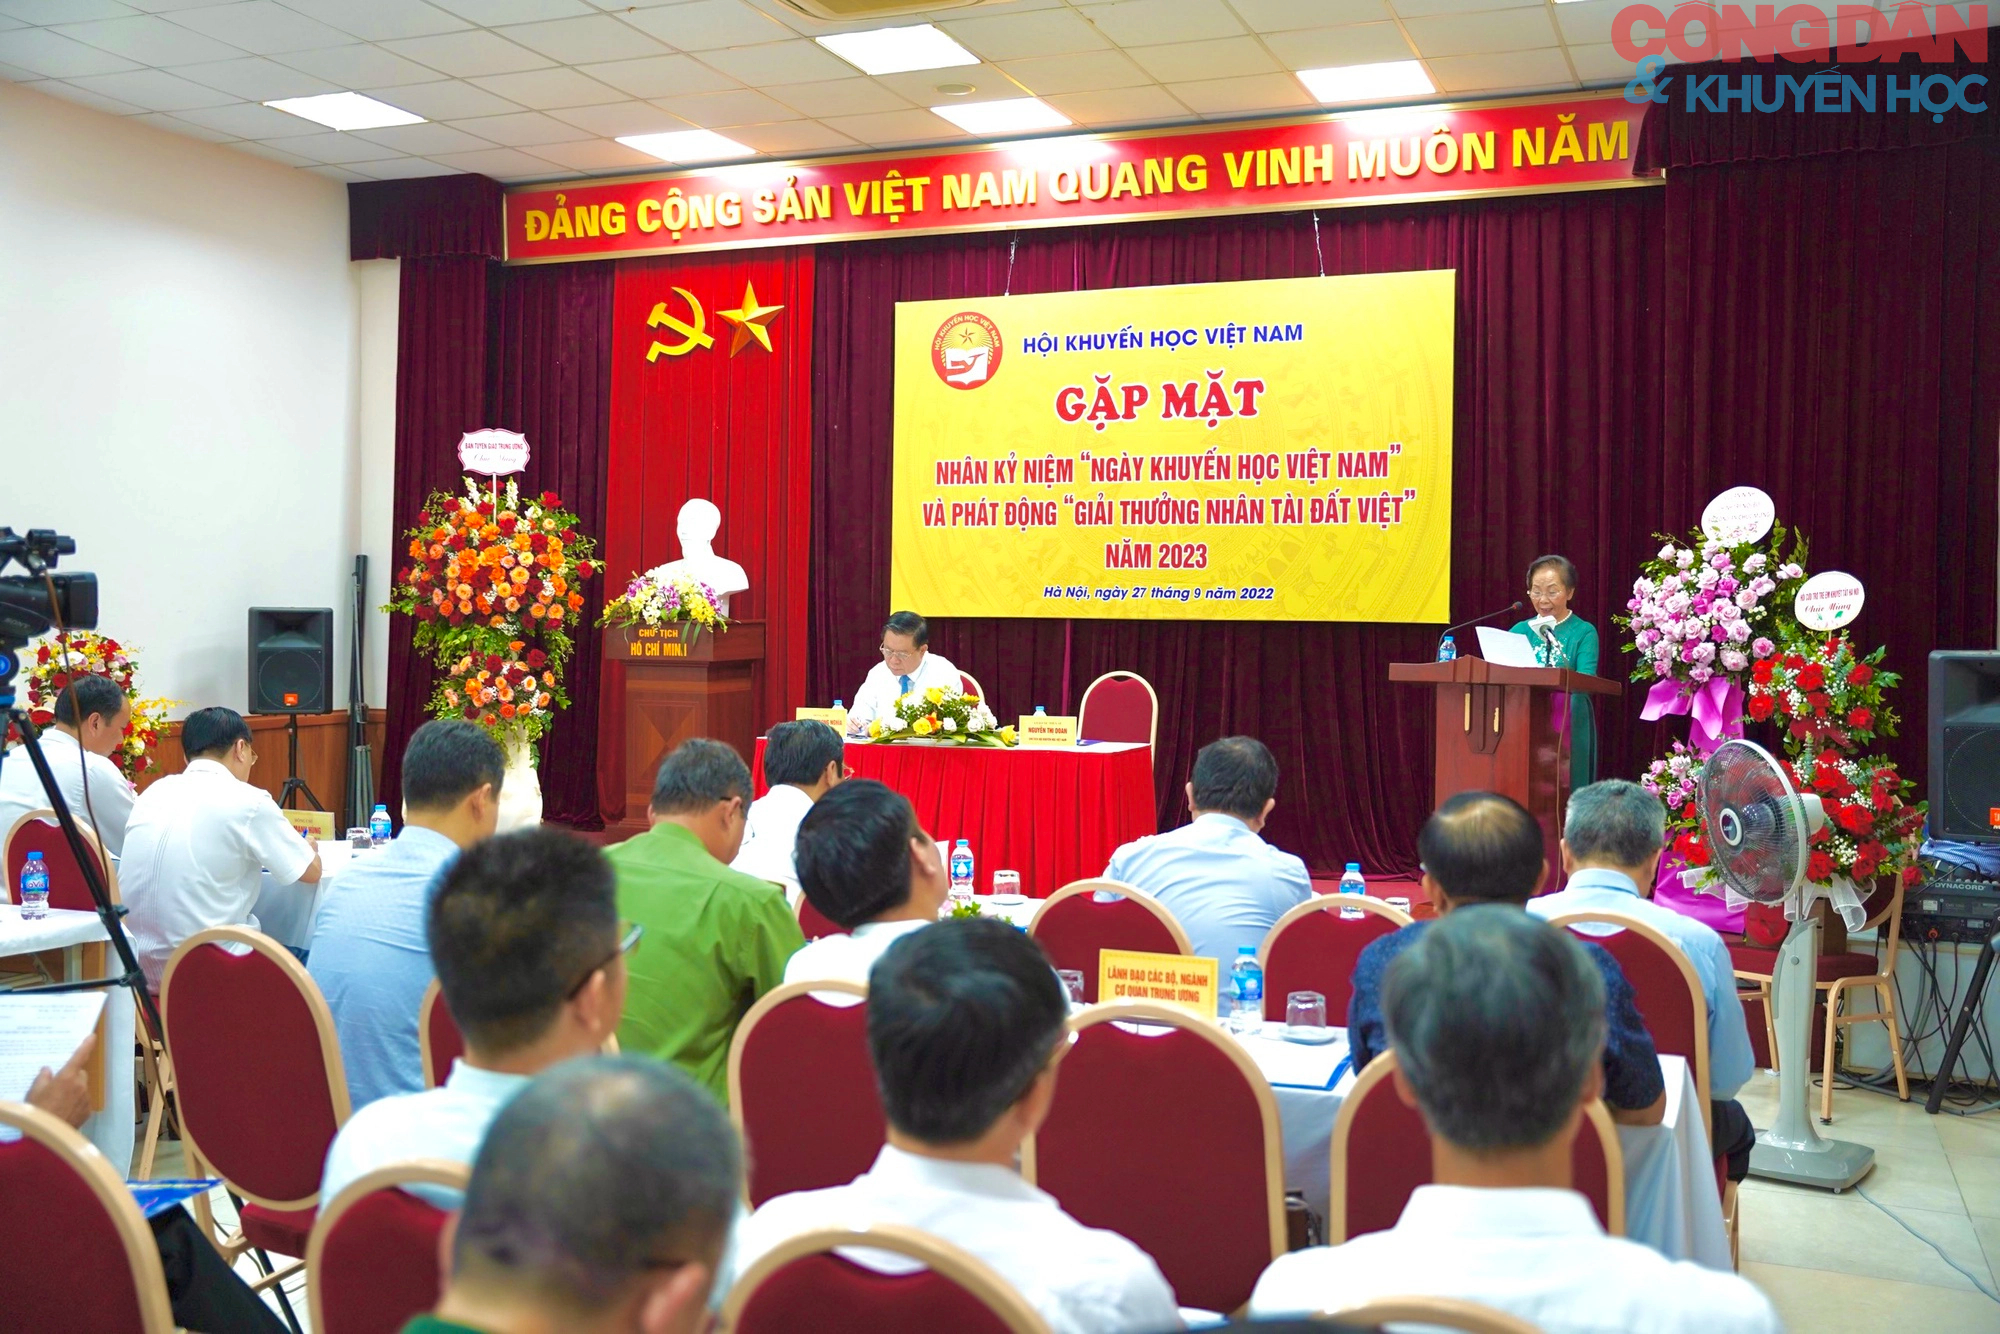 Kỷ niệm “Ngày Khuyến học Việt Nam” và phát động “Giải thưởng nhân tài đất Việt” - Ảnh 1.